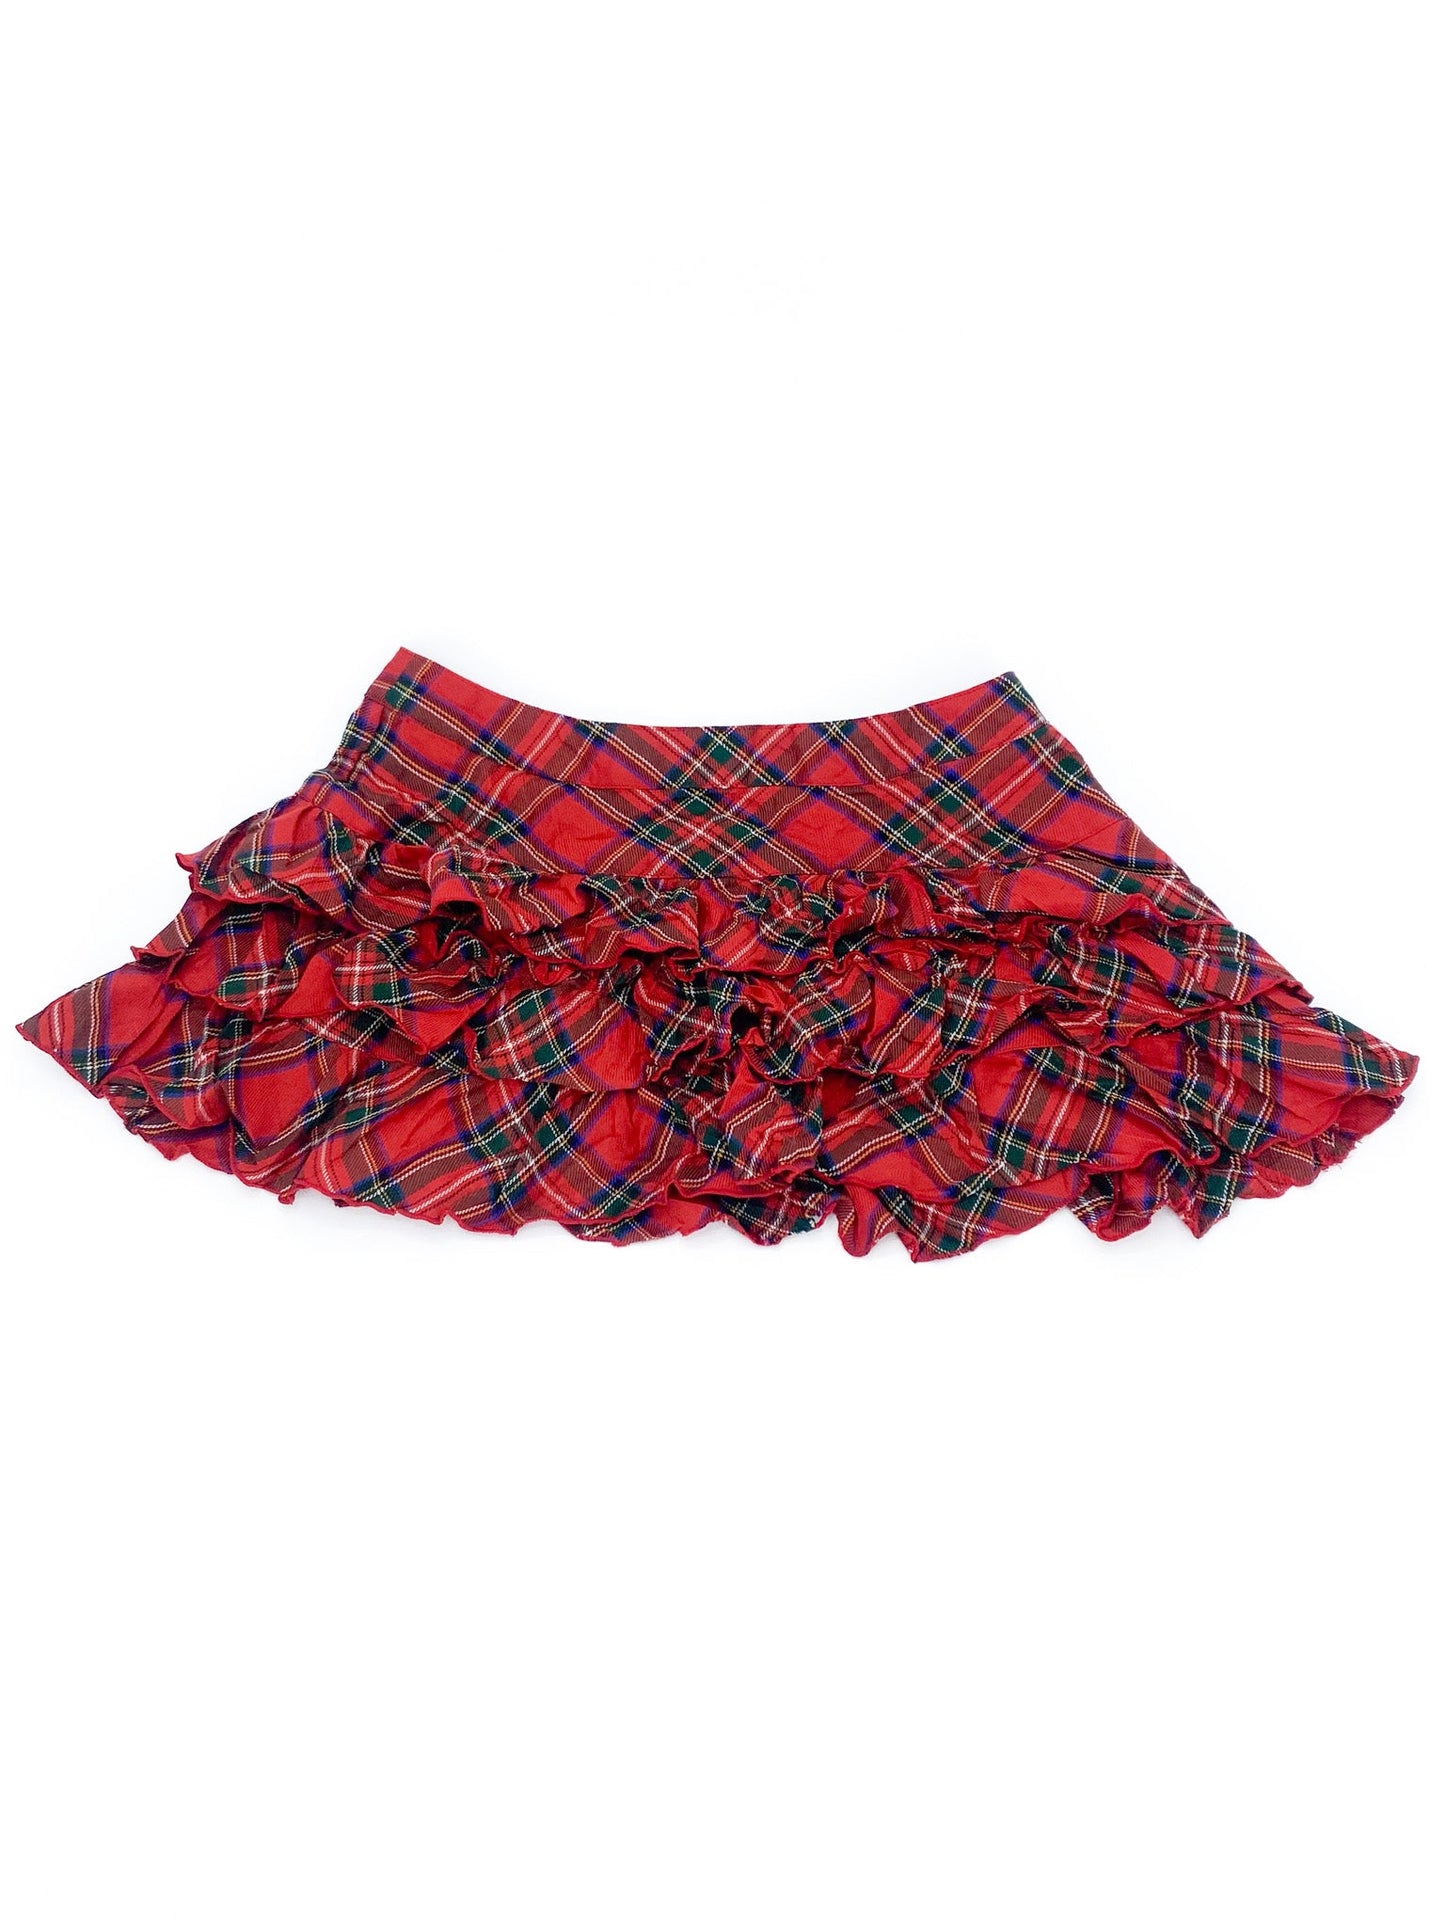 Vintage 00's Red Tartan Mini Skirt - M - Playground Vintage